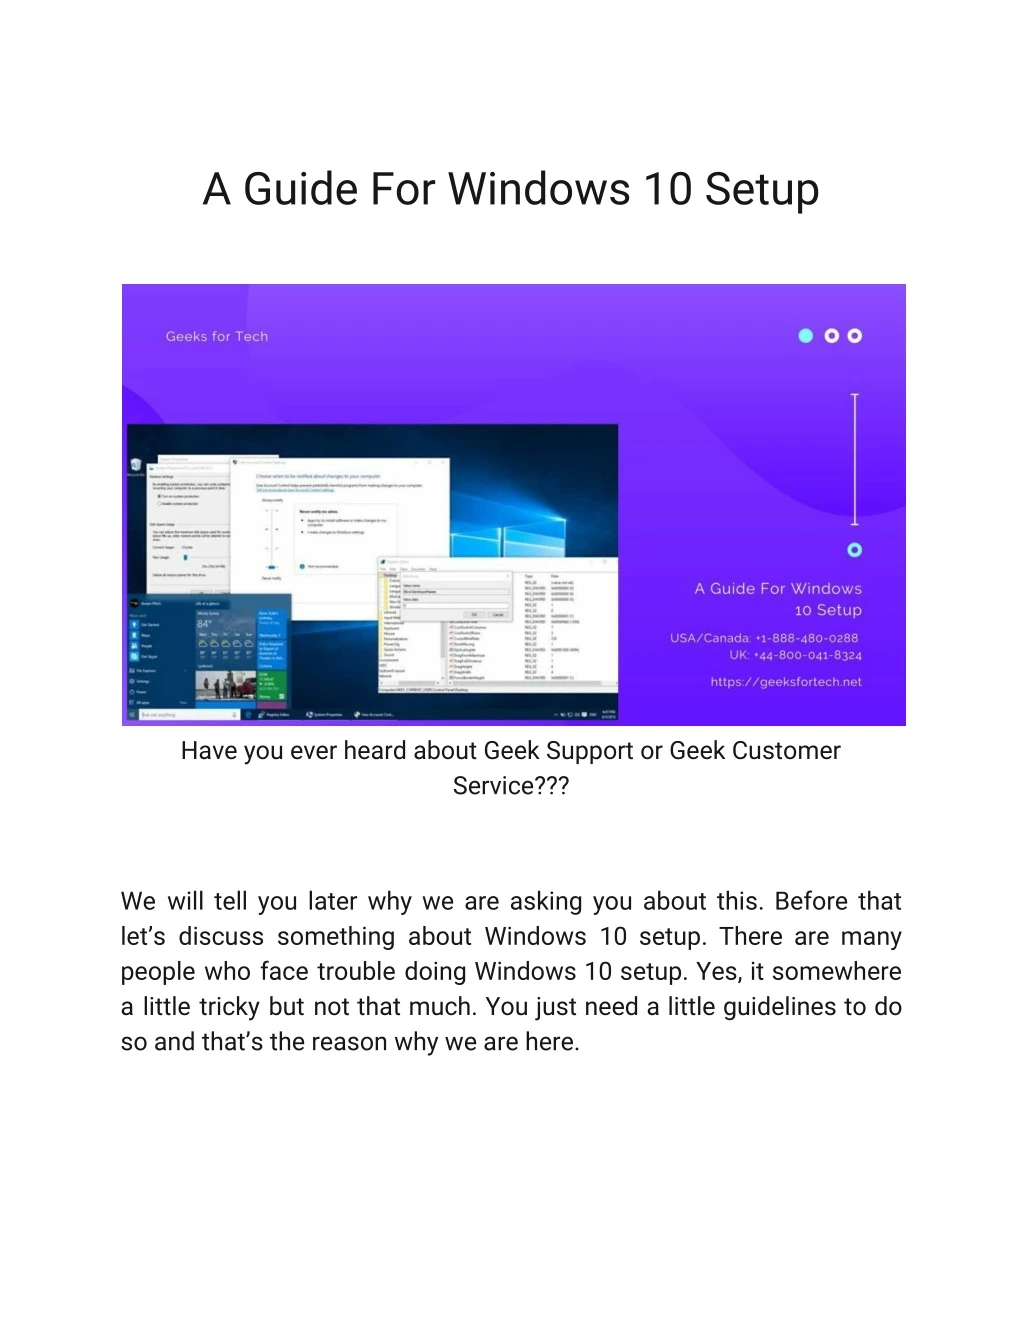 a guide for windows 10 setup